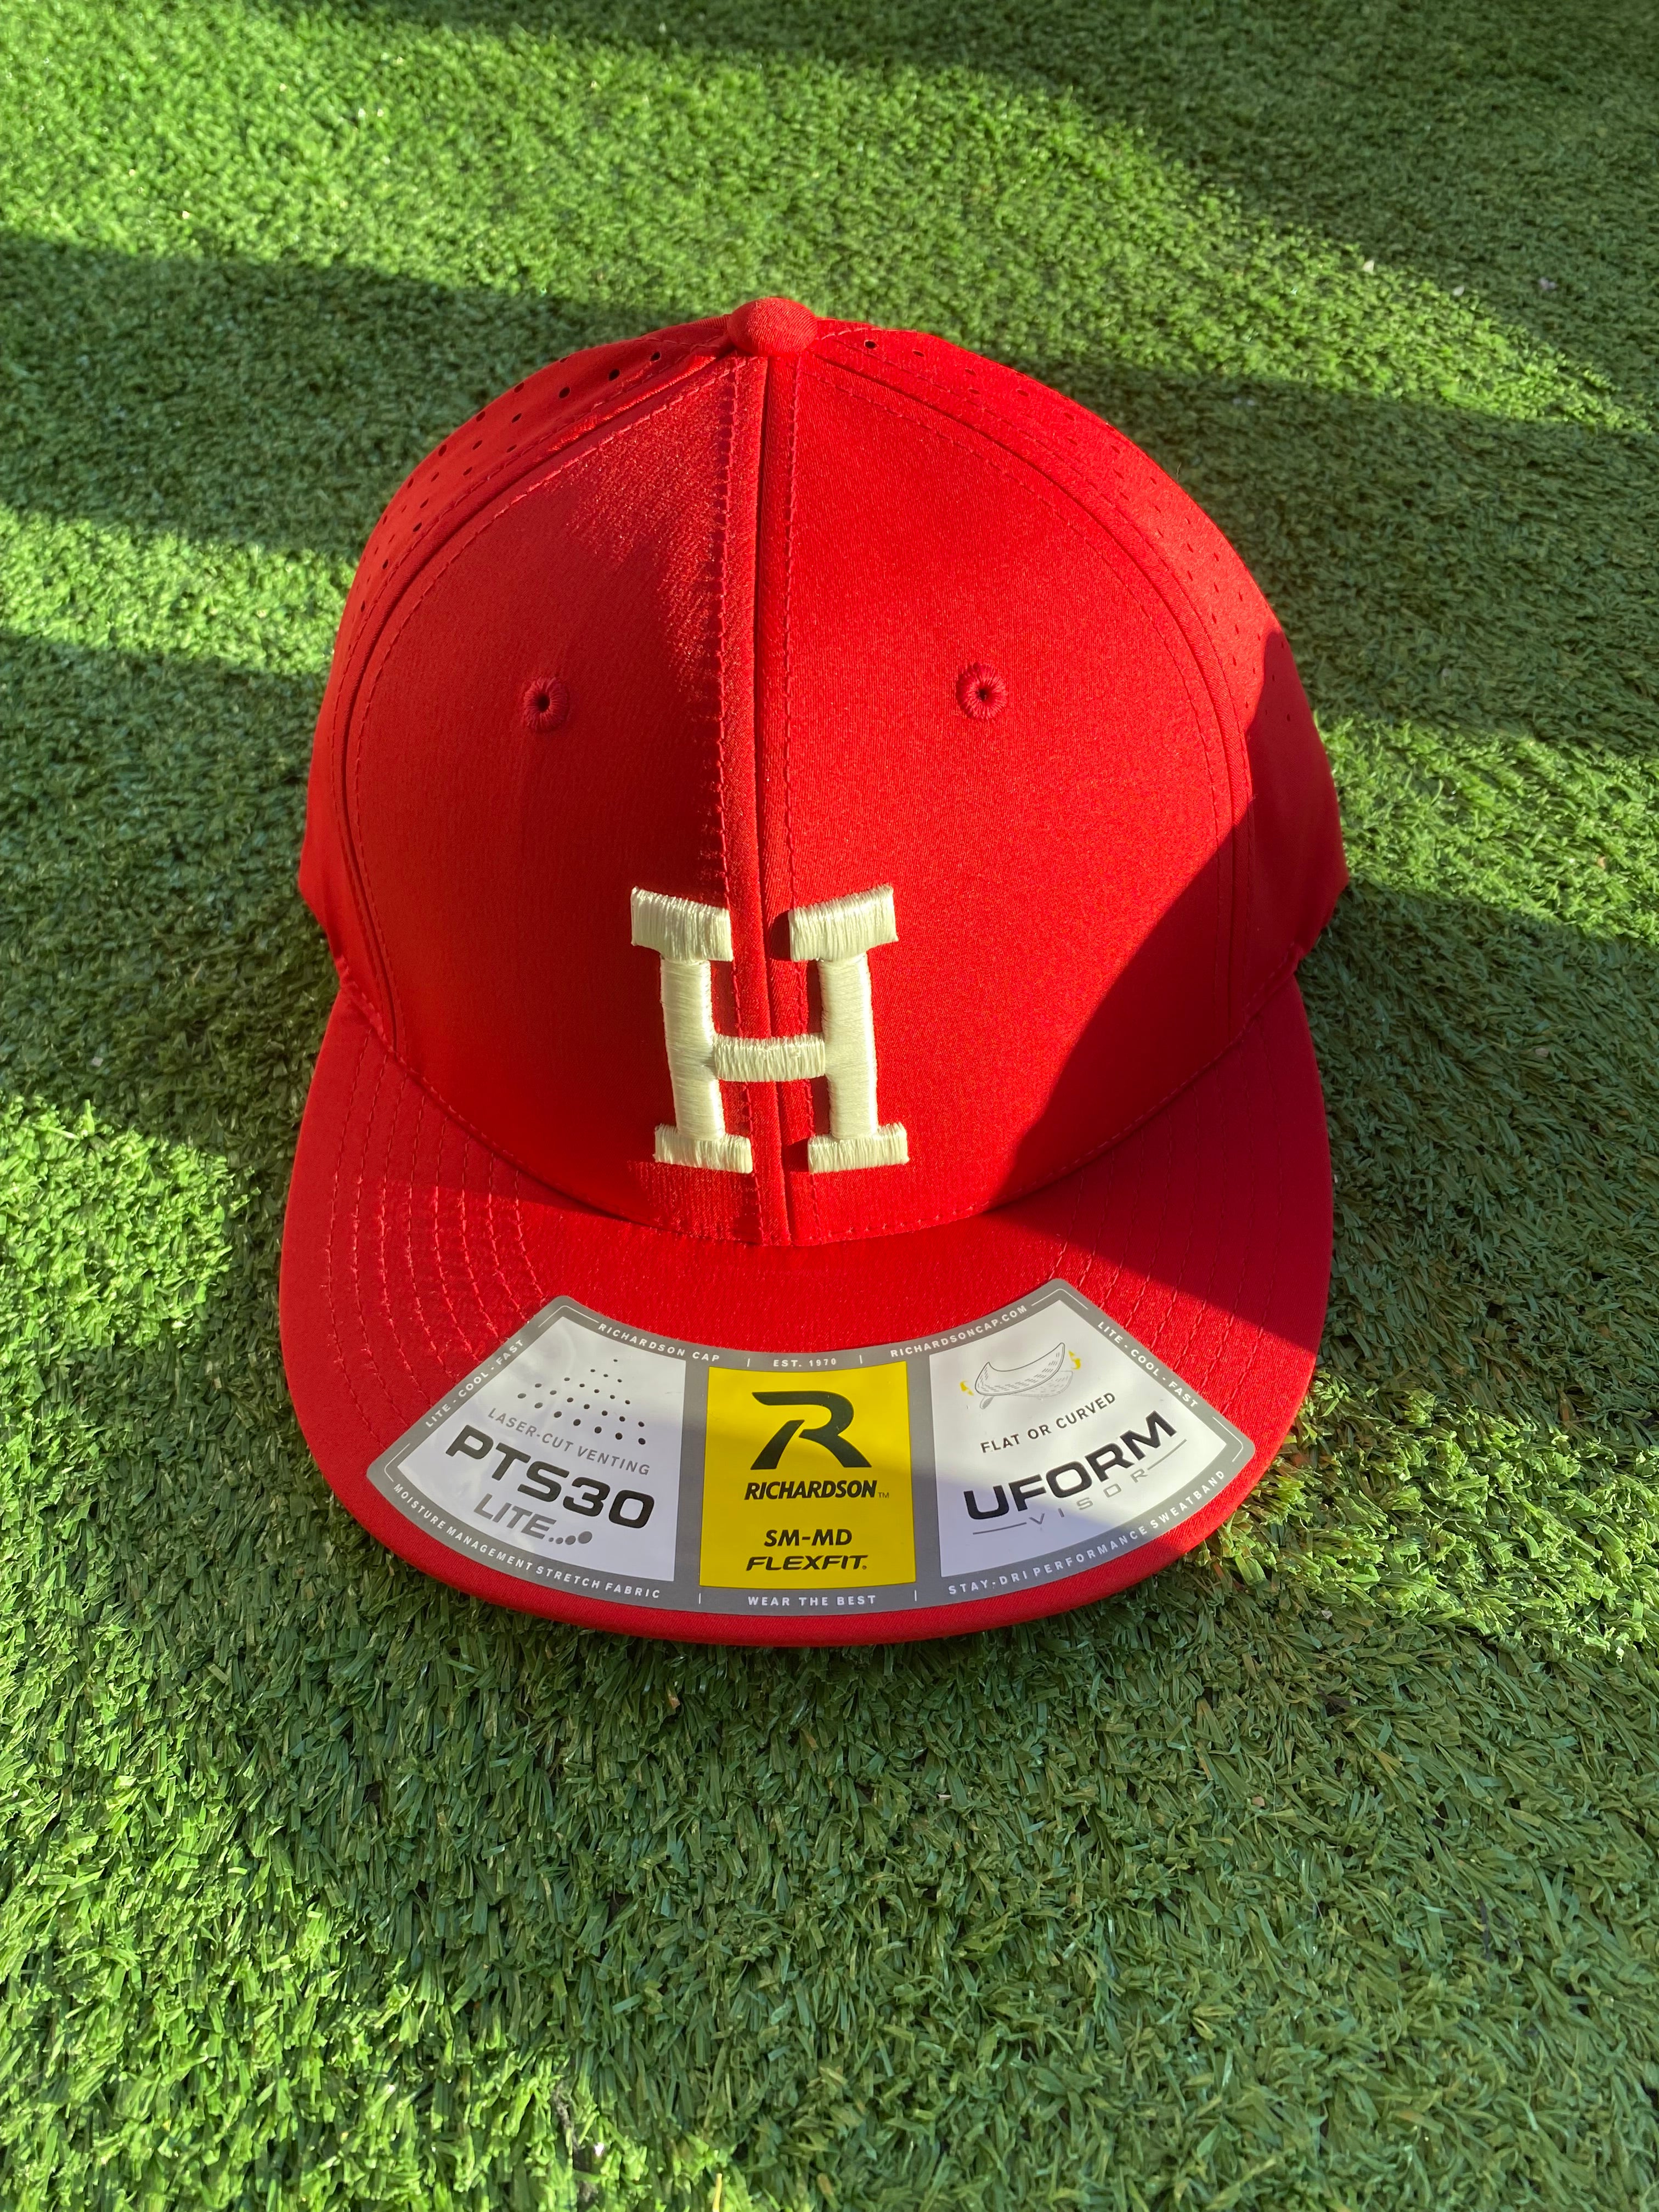 Heath hat (Red with cream H)